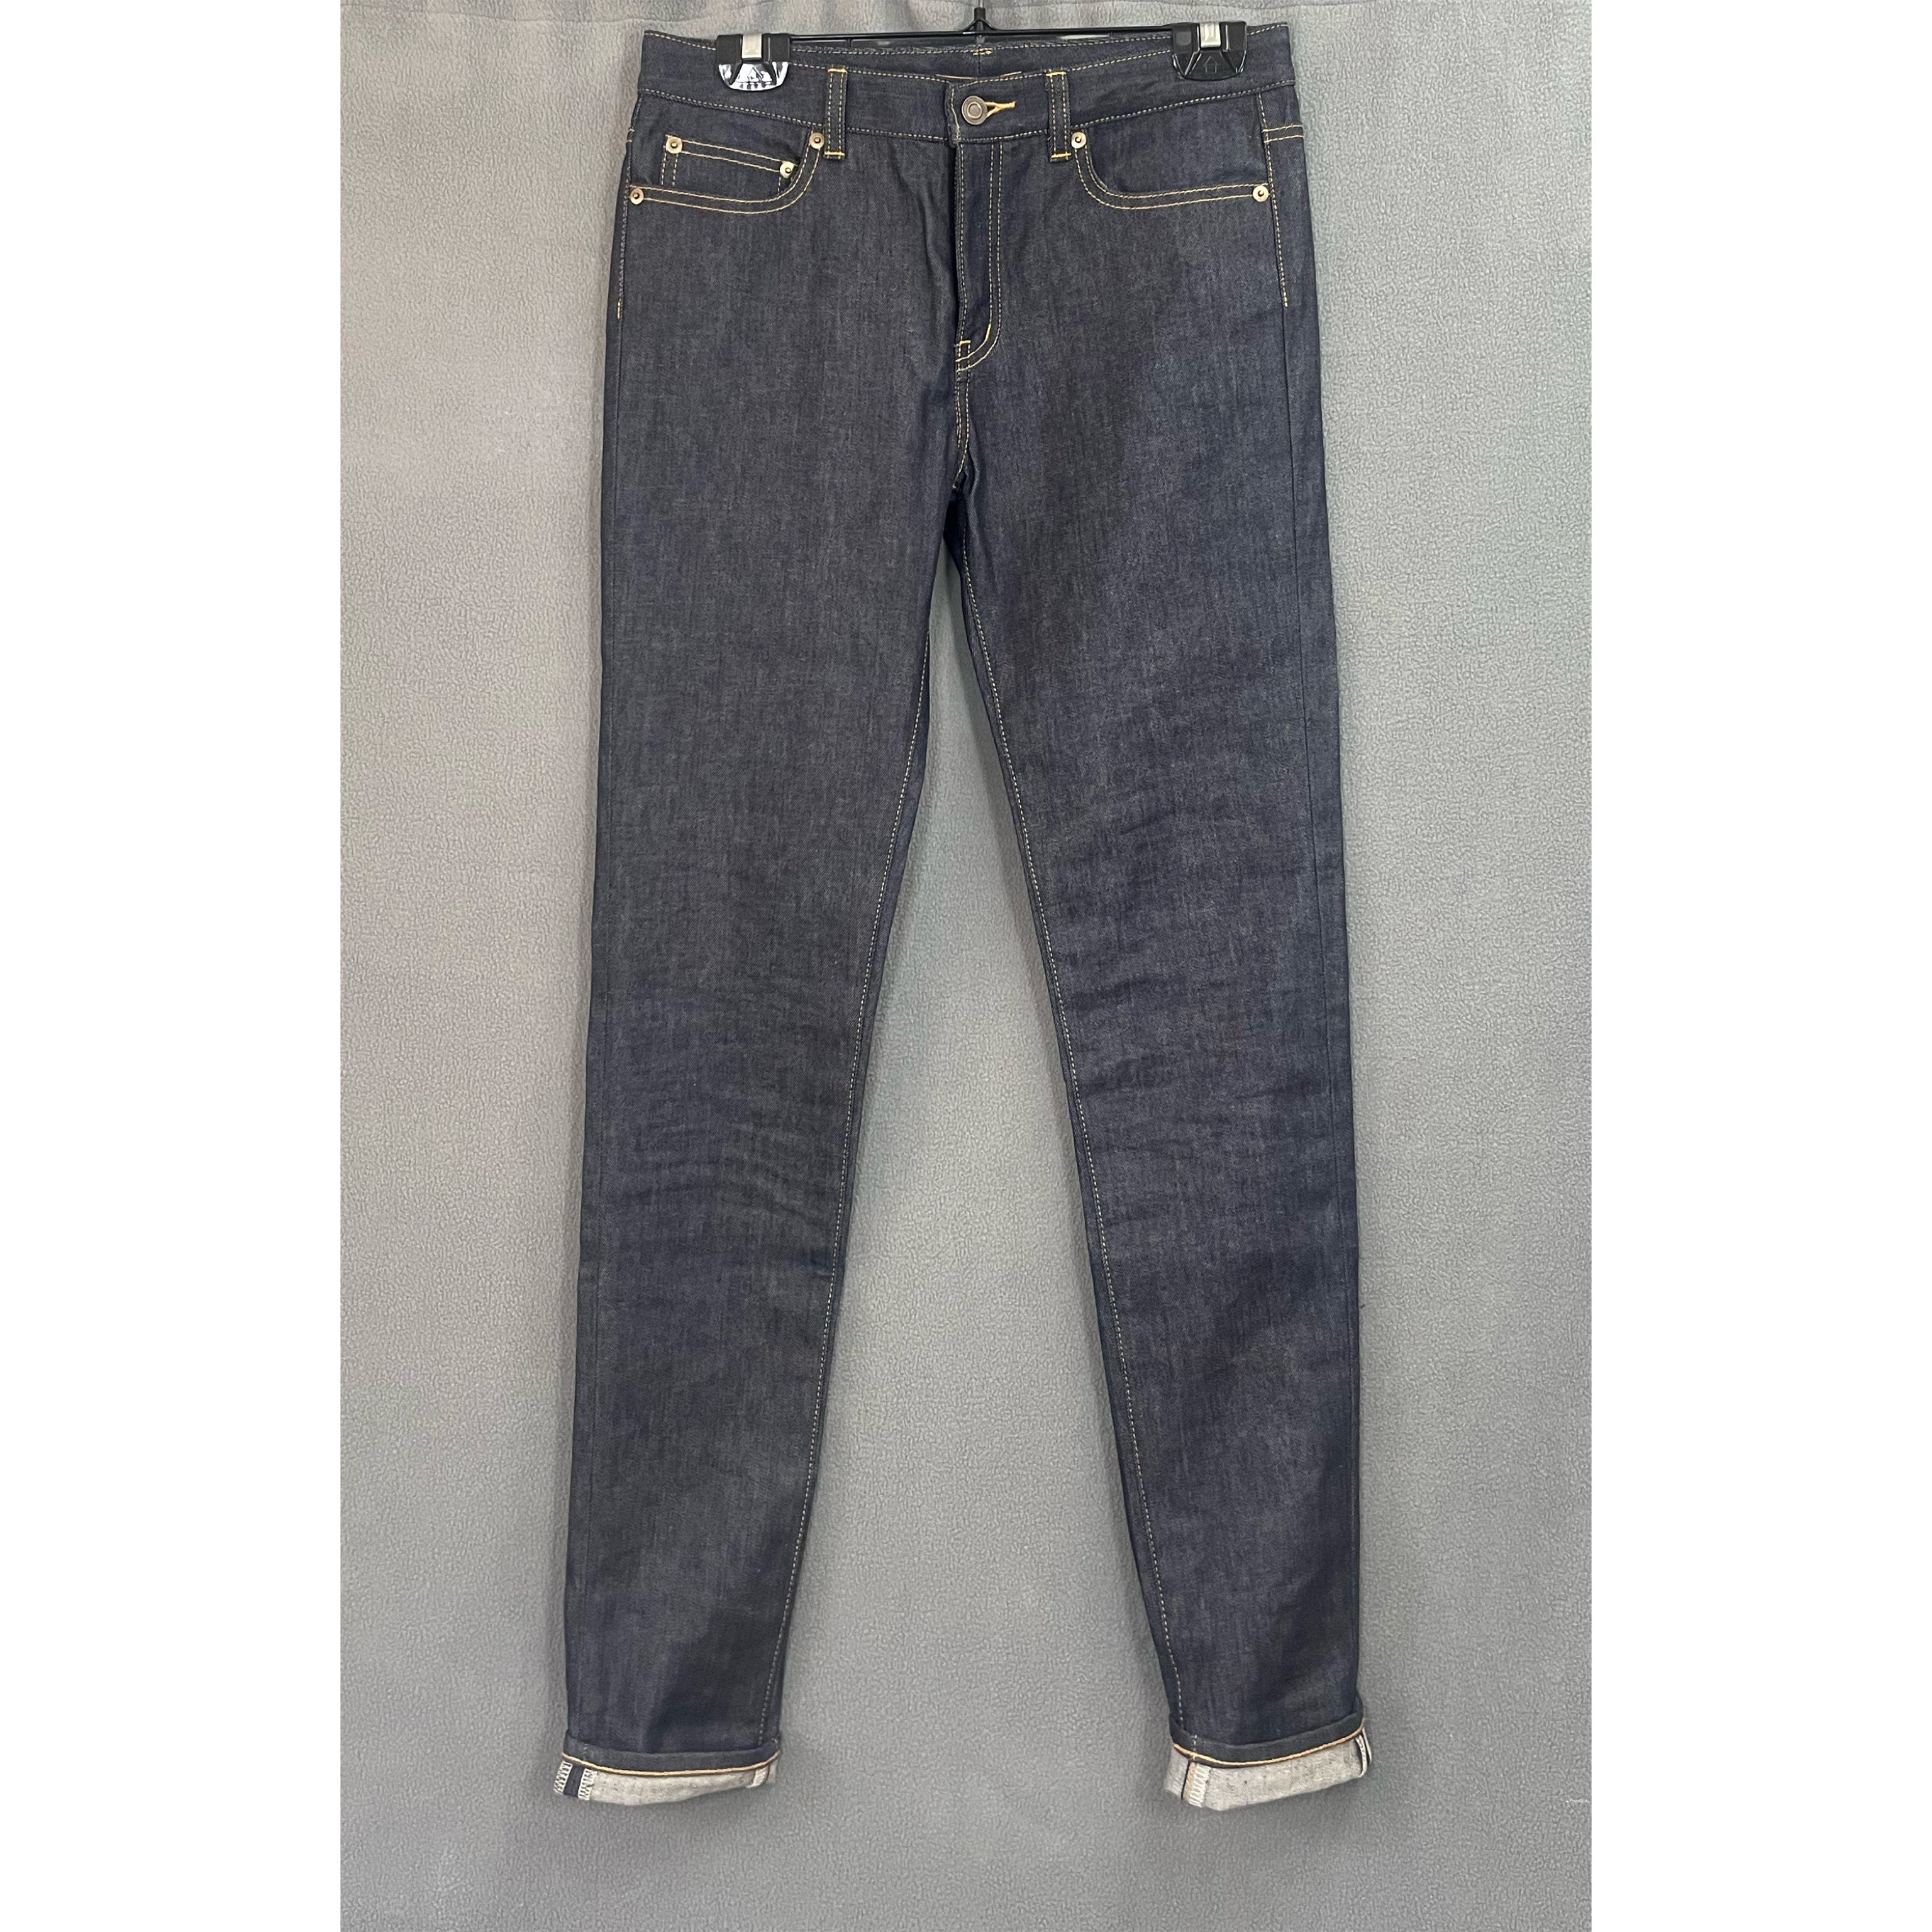 Saint Laurent dark selvedge denim jeans, size 30, LIKE NEW!